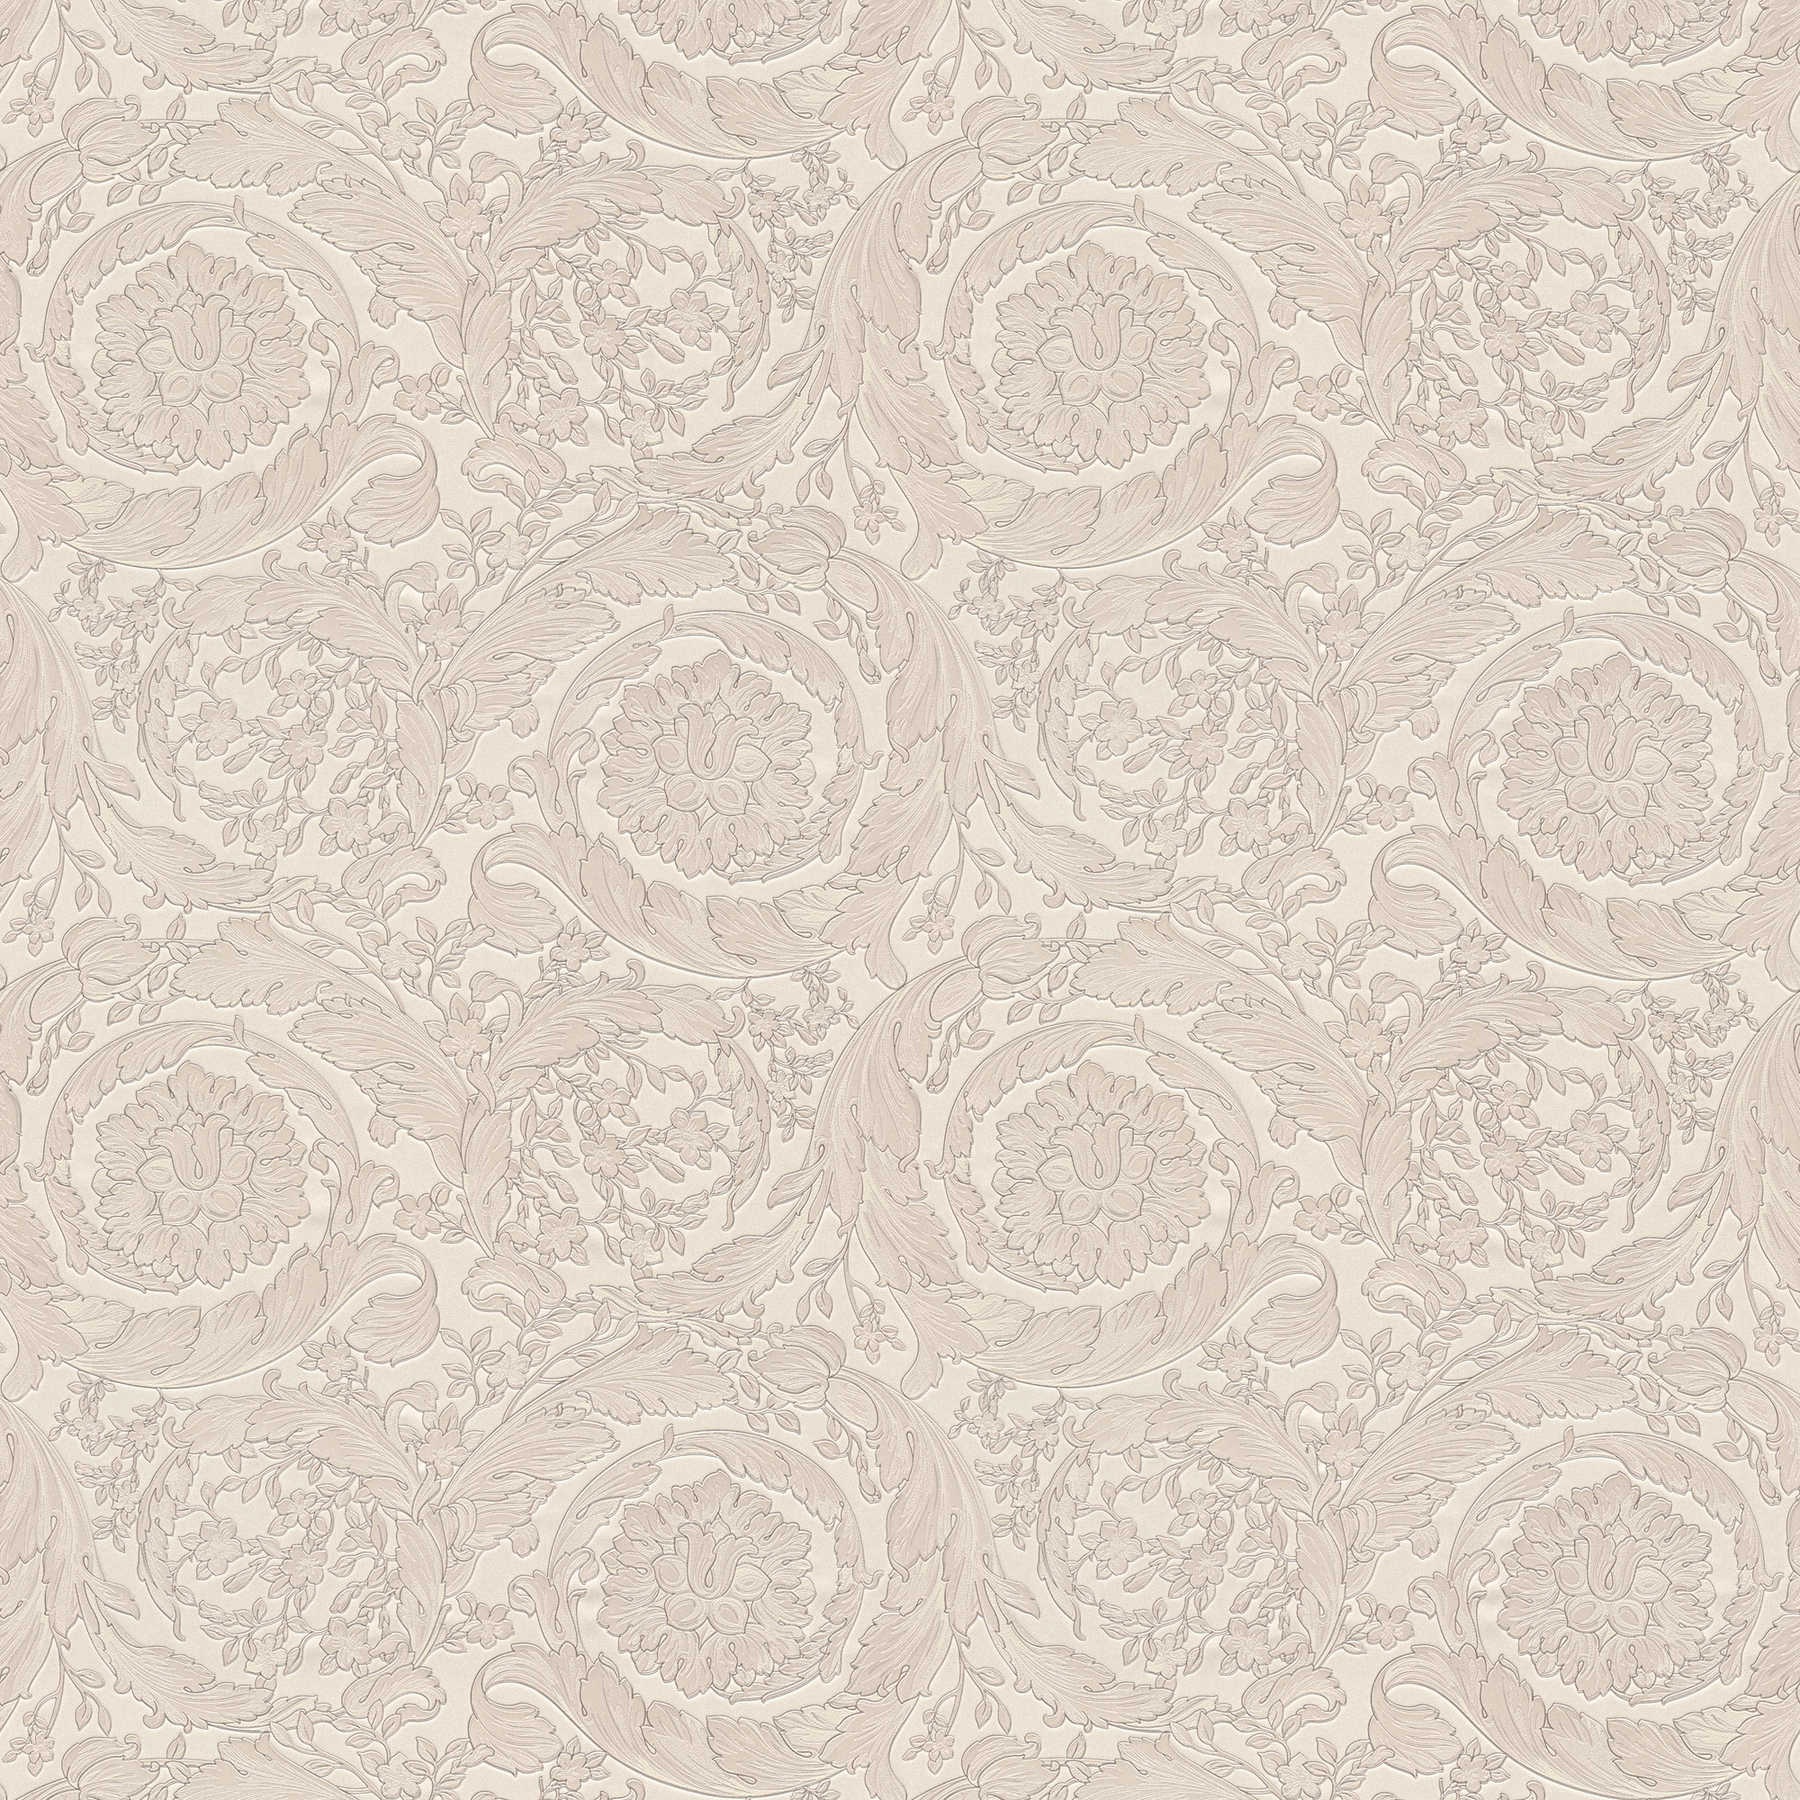             Papier peint VERSACE motif floral ornemental avec éclat métallique - marron, crème
        